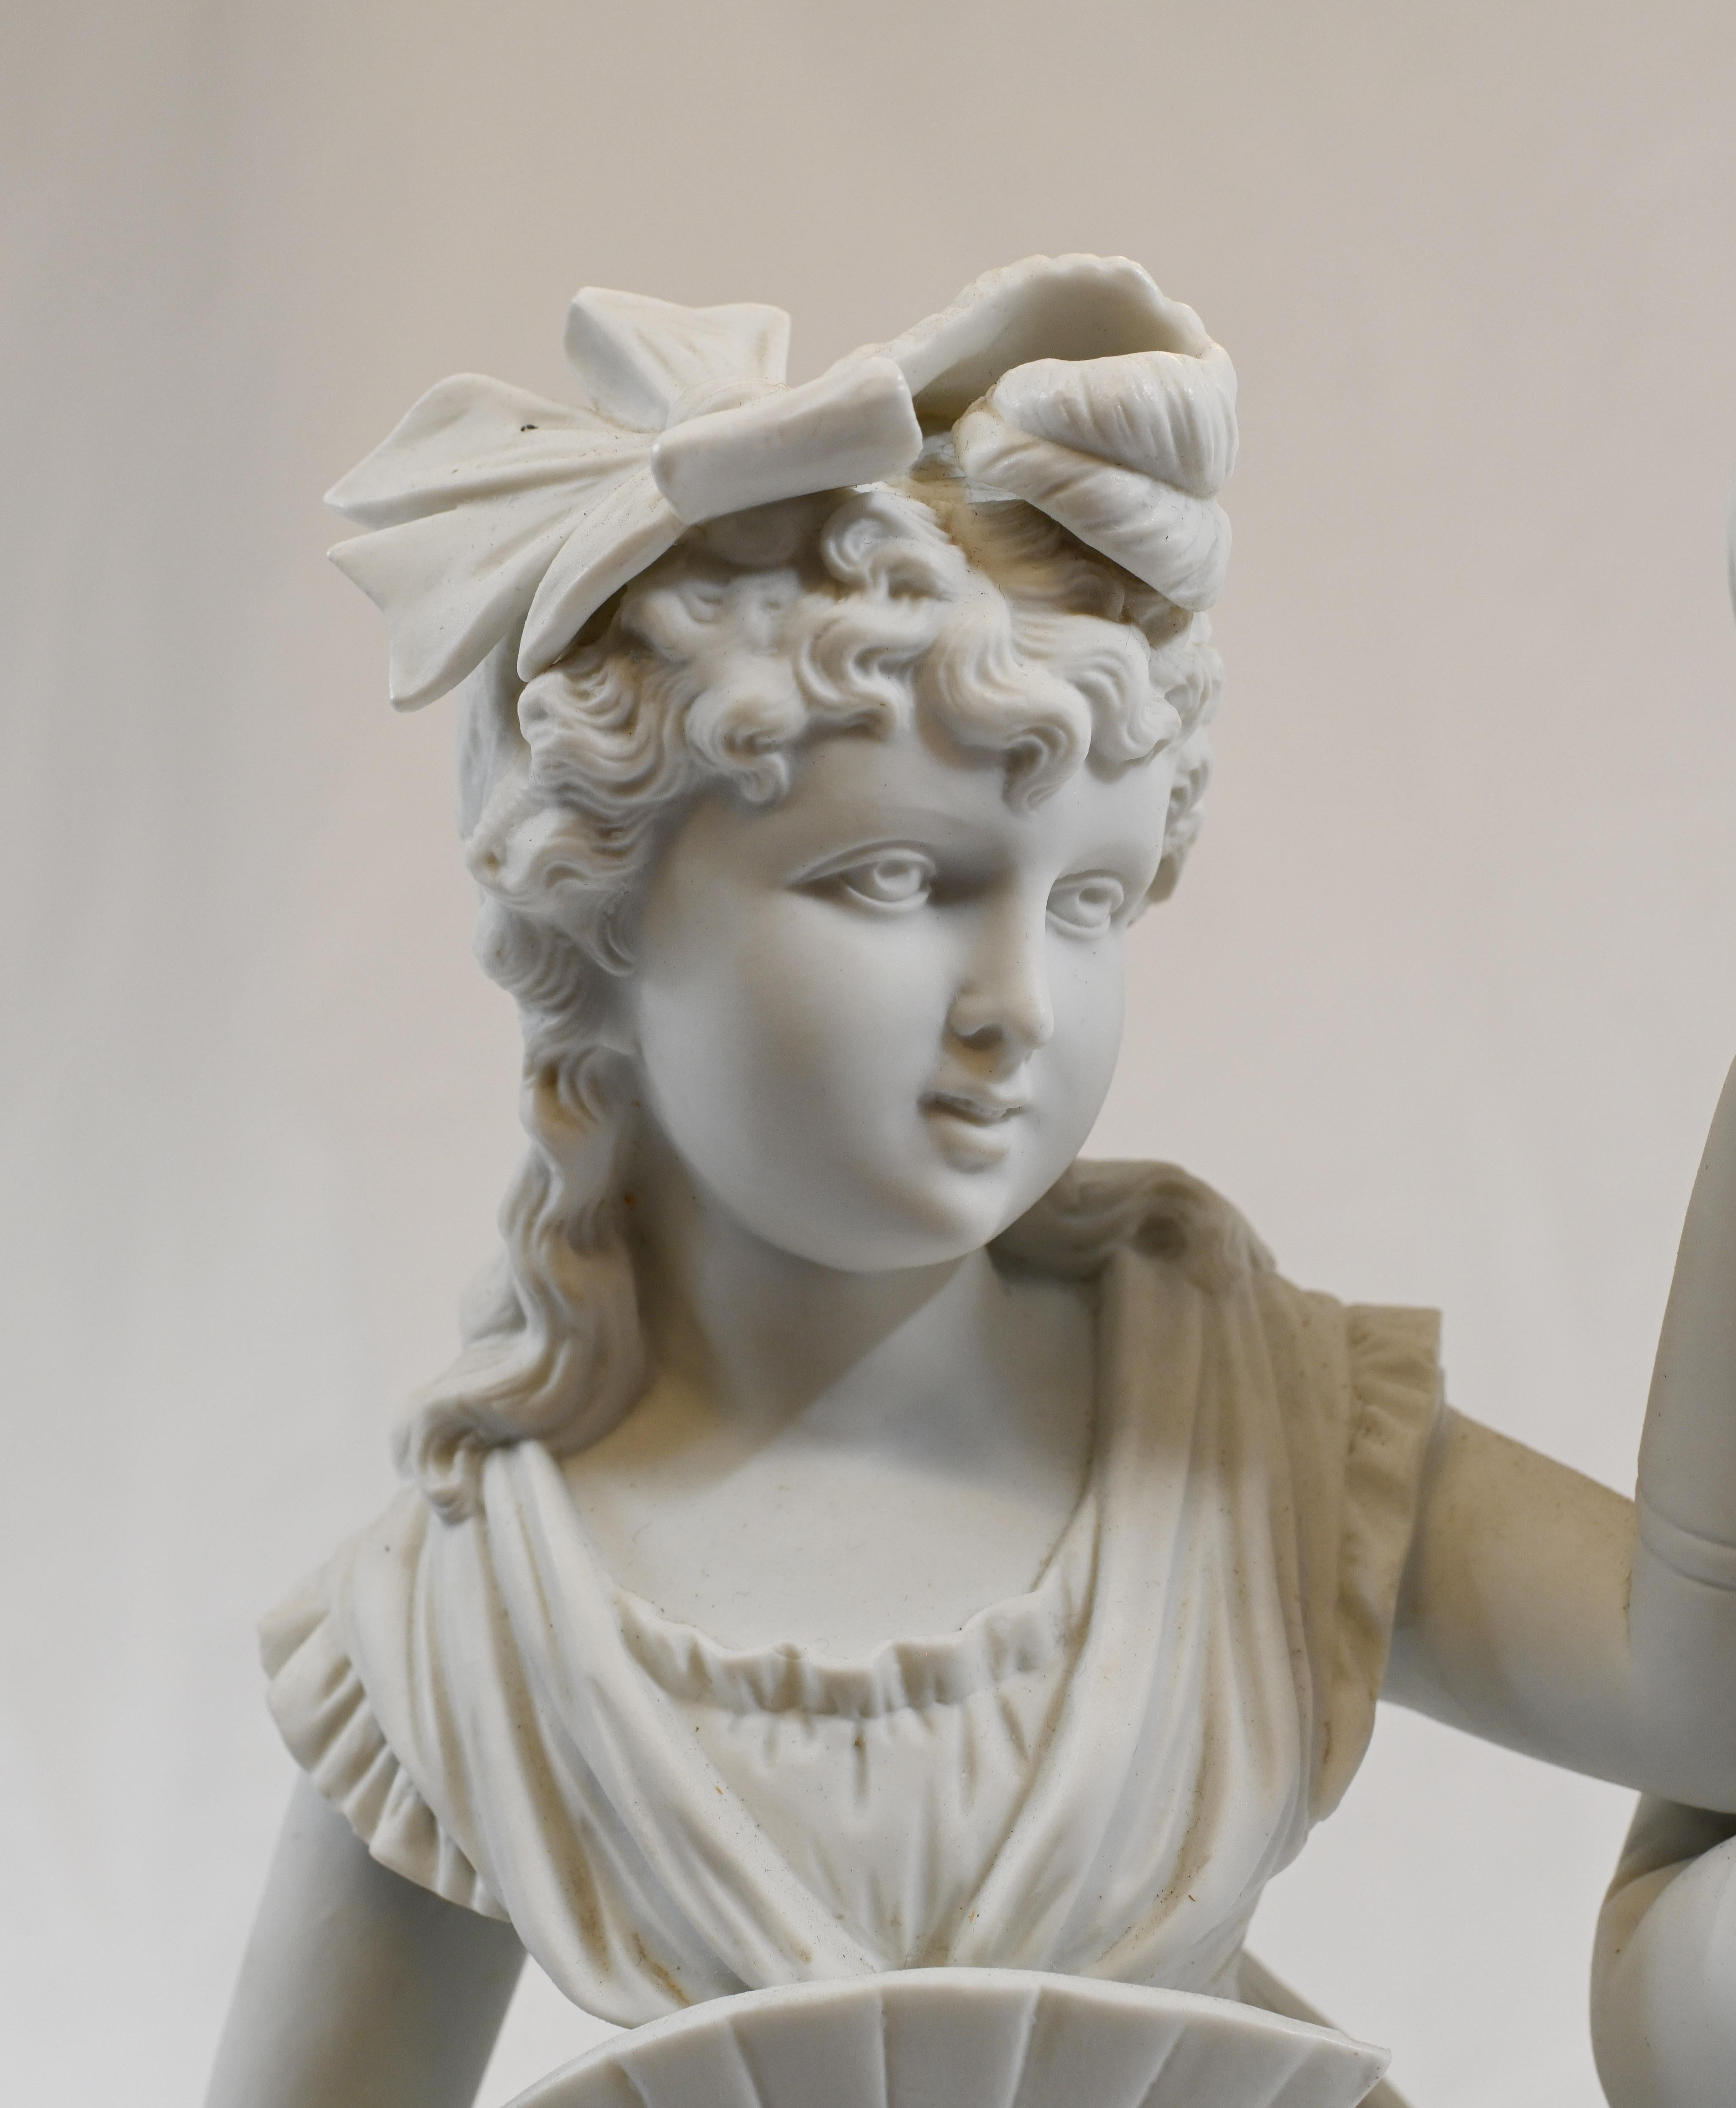 Ein französisches Liebespaar in der Kleidung des 18. Jahrhunderts in Porzellankeksen von Copeland
Knapp ein Meter große Statue mit hohem Sammlerwert
Parian wird aus Biskuitporzellan hergestellt. Mit seiner weißen Farbe ist das Material ein